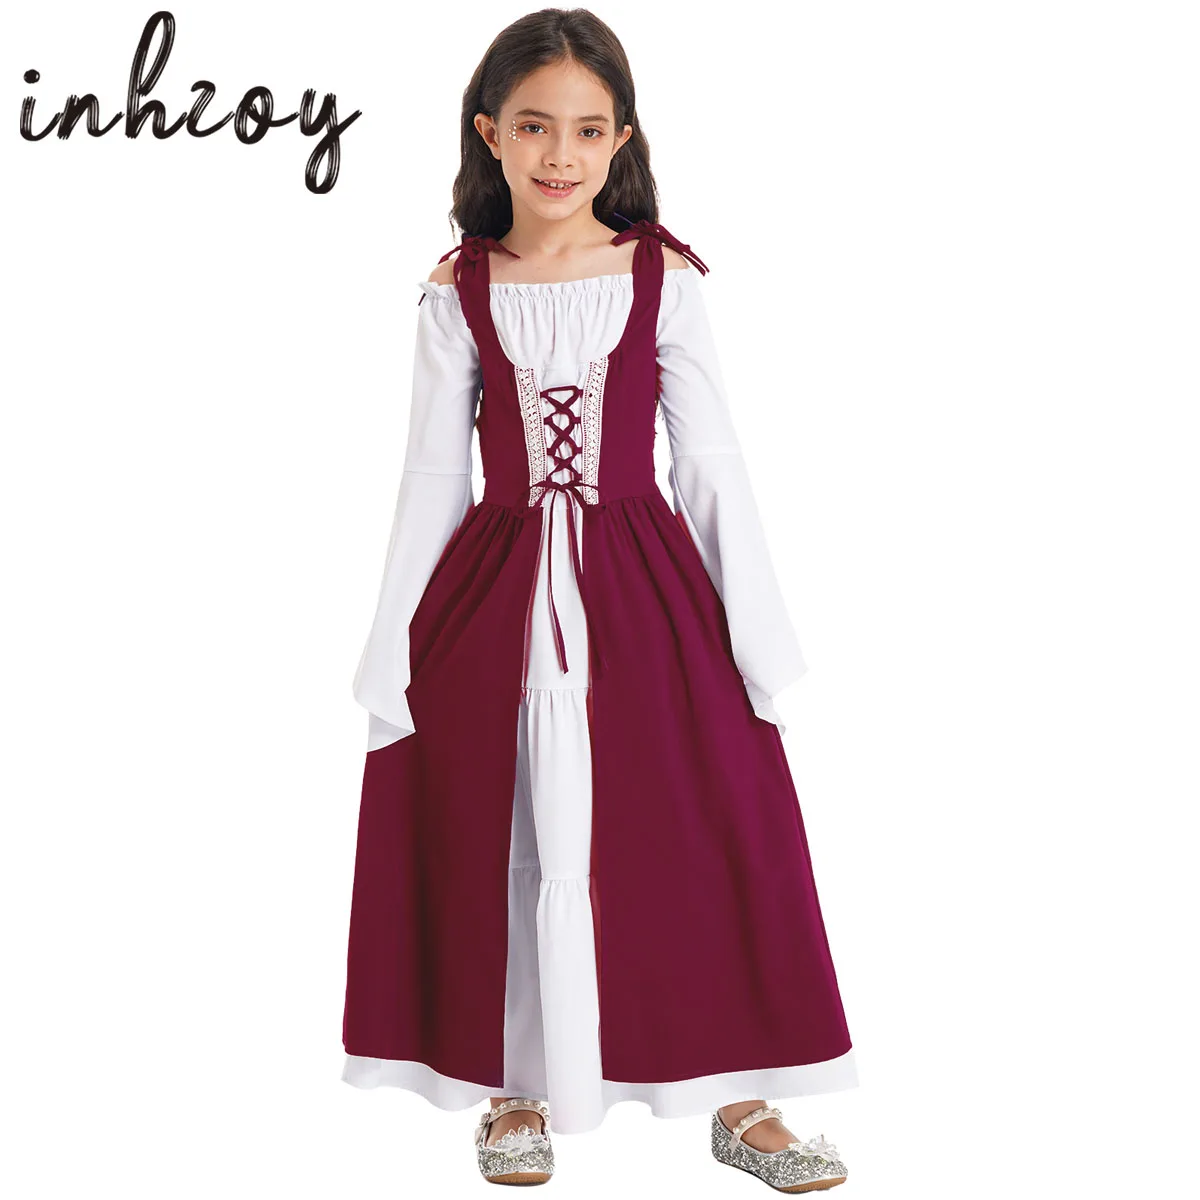 

Детское винтажное платье принцессы эпохи Возрождения, костюм средневековой принцессы с длинными расклешенными рукавами, бальное платье в стиле ретро, платье вампира для косплея